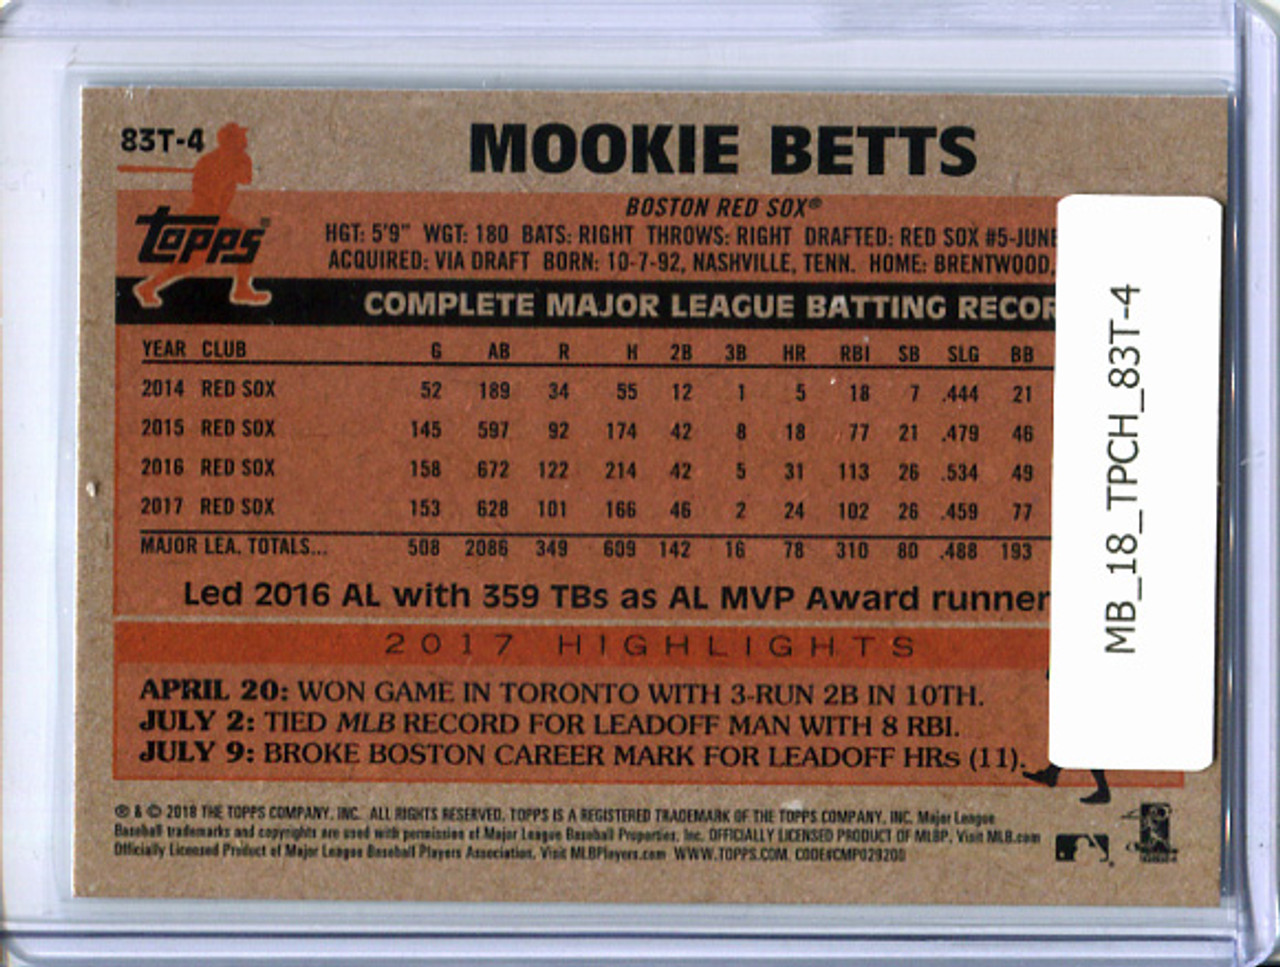 Mookie Betts 2018 Topps Chrome, 1983 Topps #83T-4